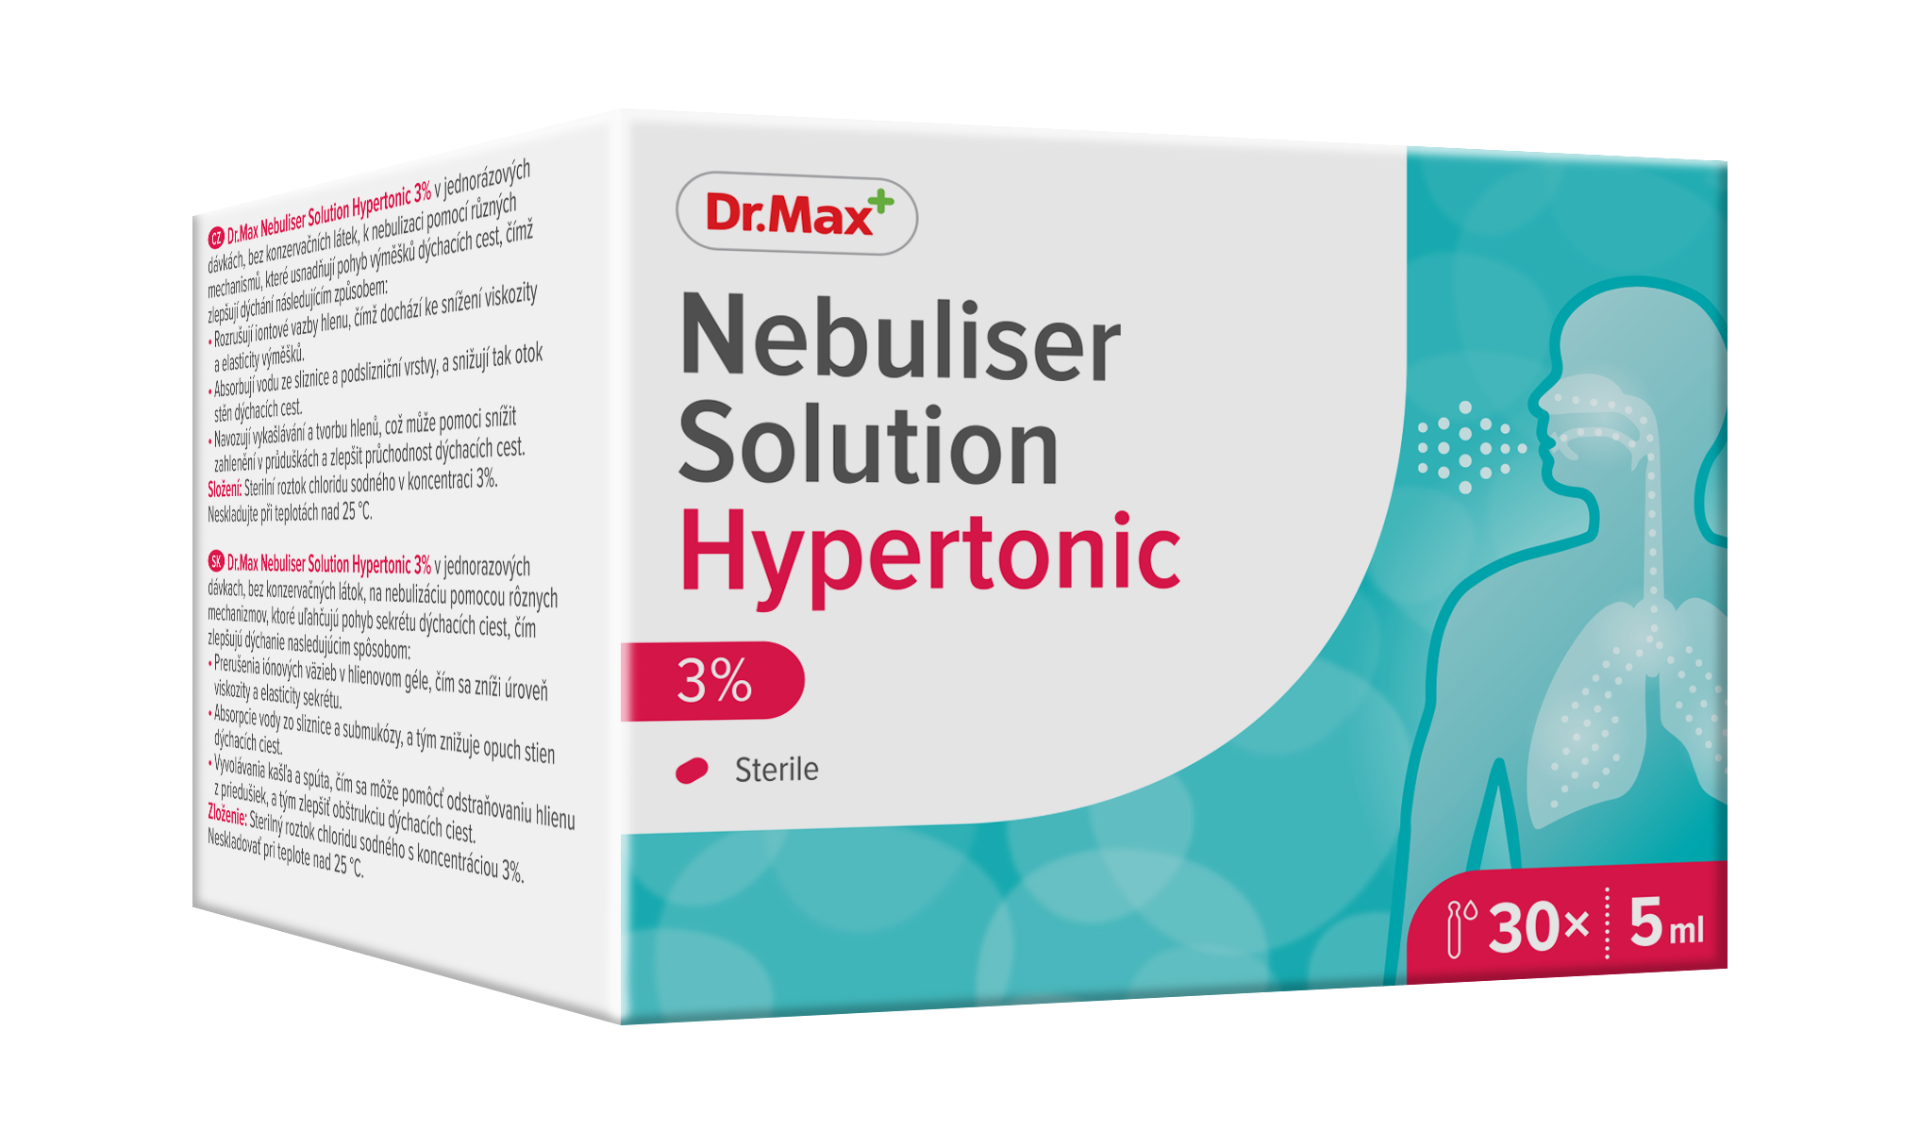 Dr.Max Solutie hipertonica 3% pentru nebulizare, 30 fiole, 5ml